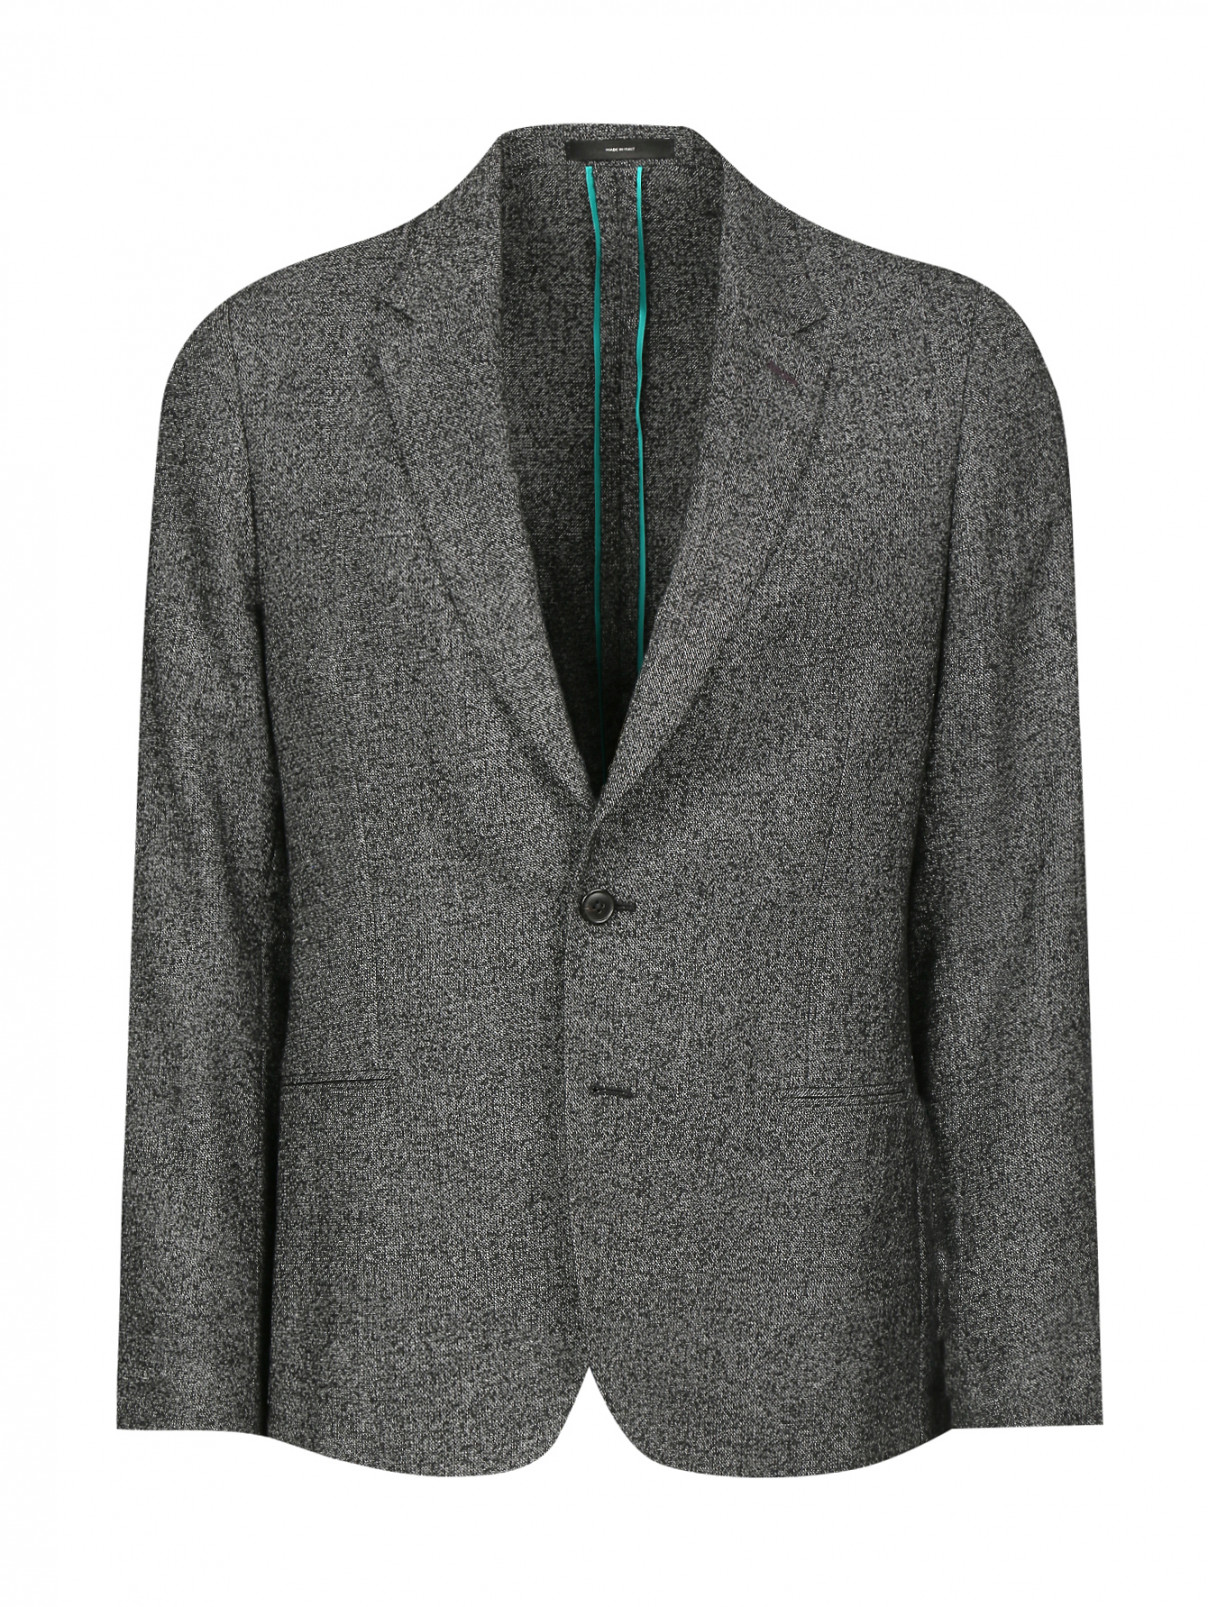 Пиджак однобортный из шерсти Paul Smith  –  Общий вид  – Цвет:  Серый